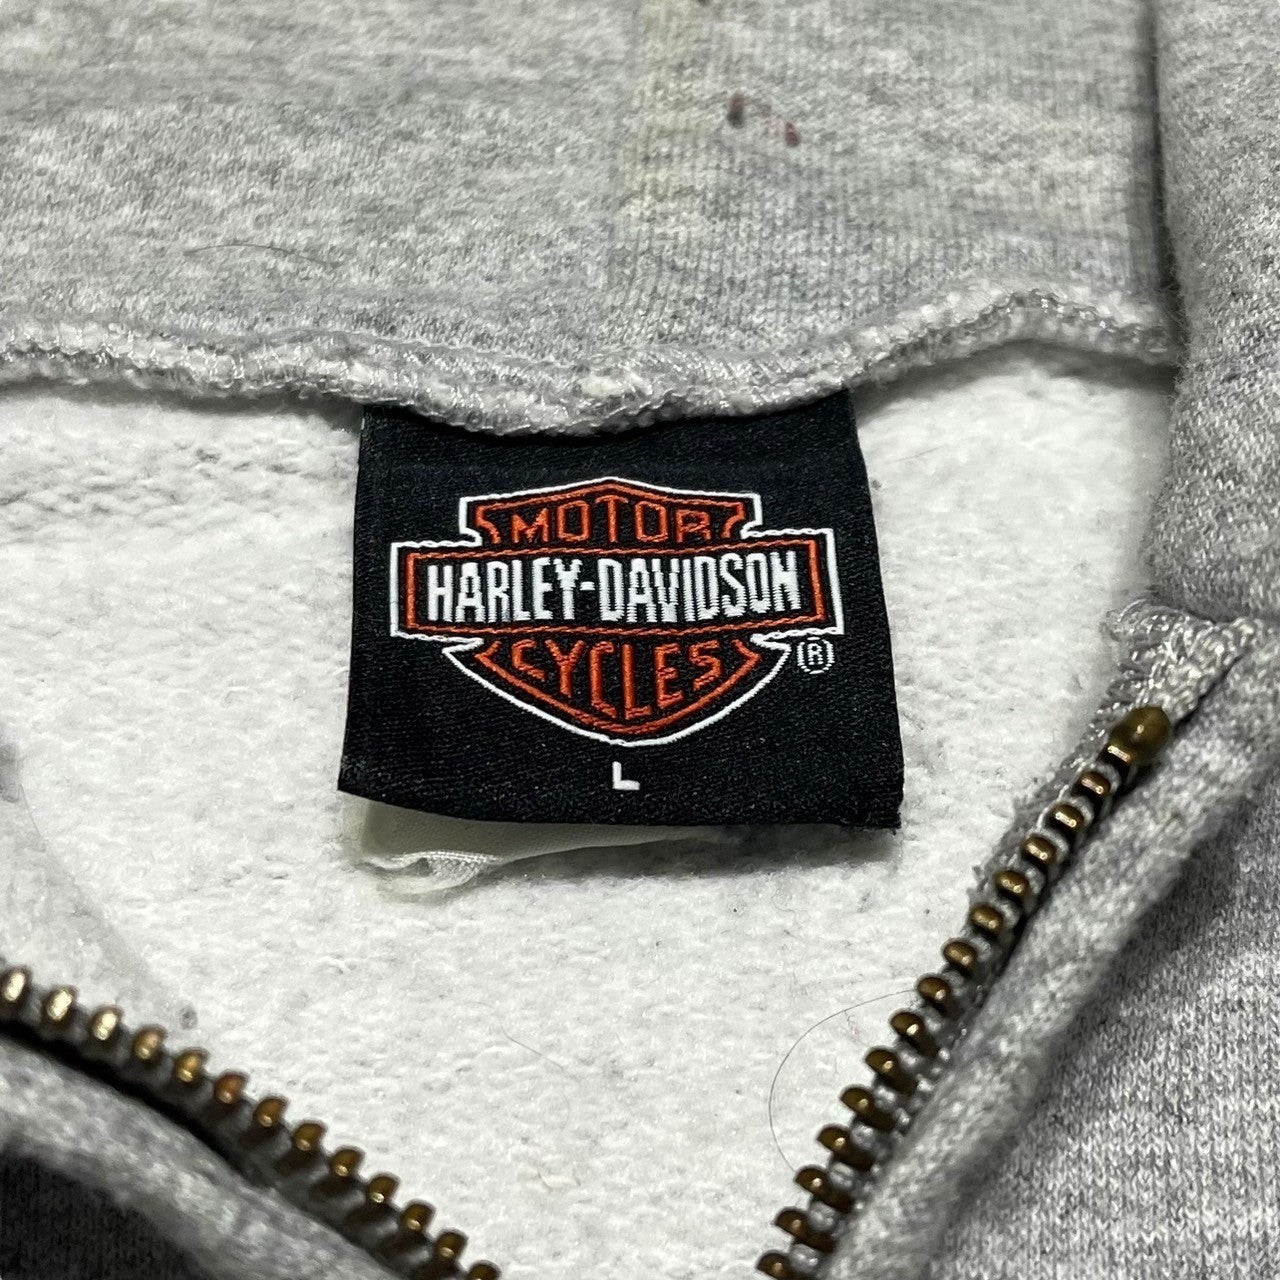 "Harley-Davidson" Full zip hoodie